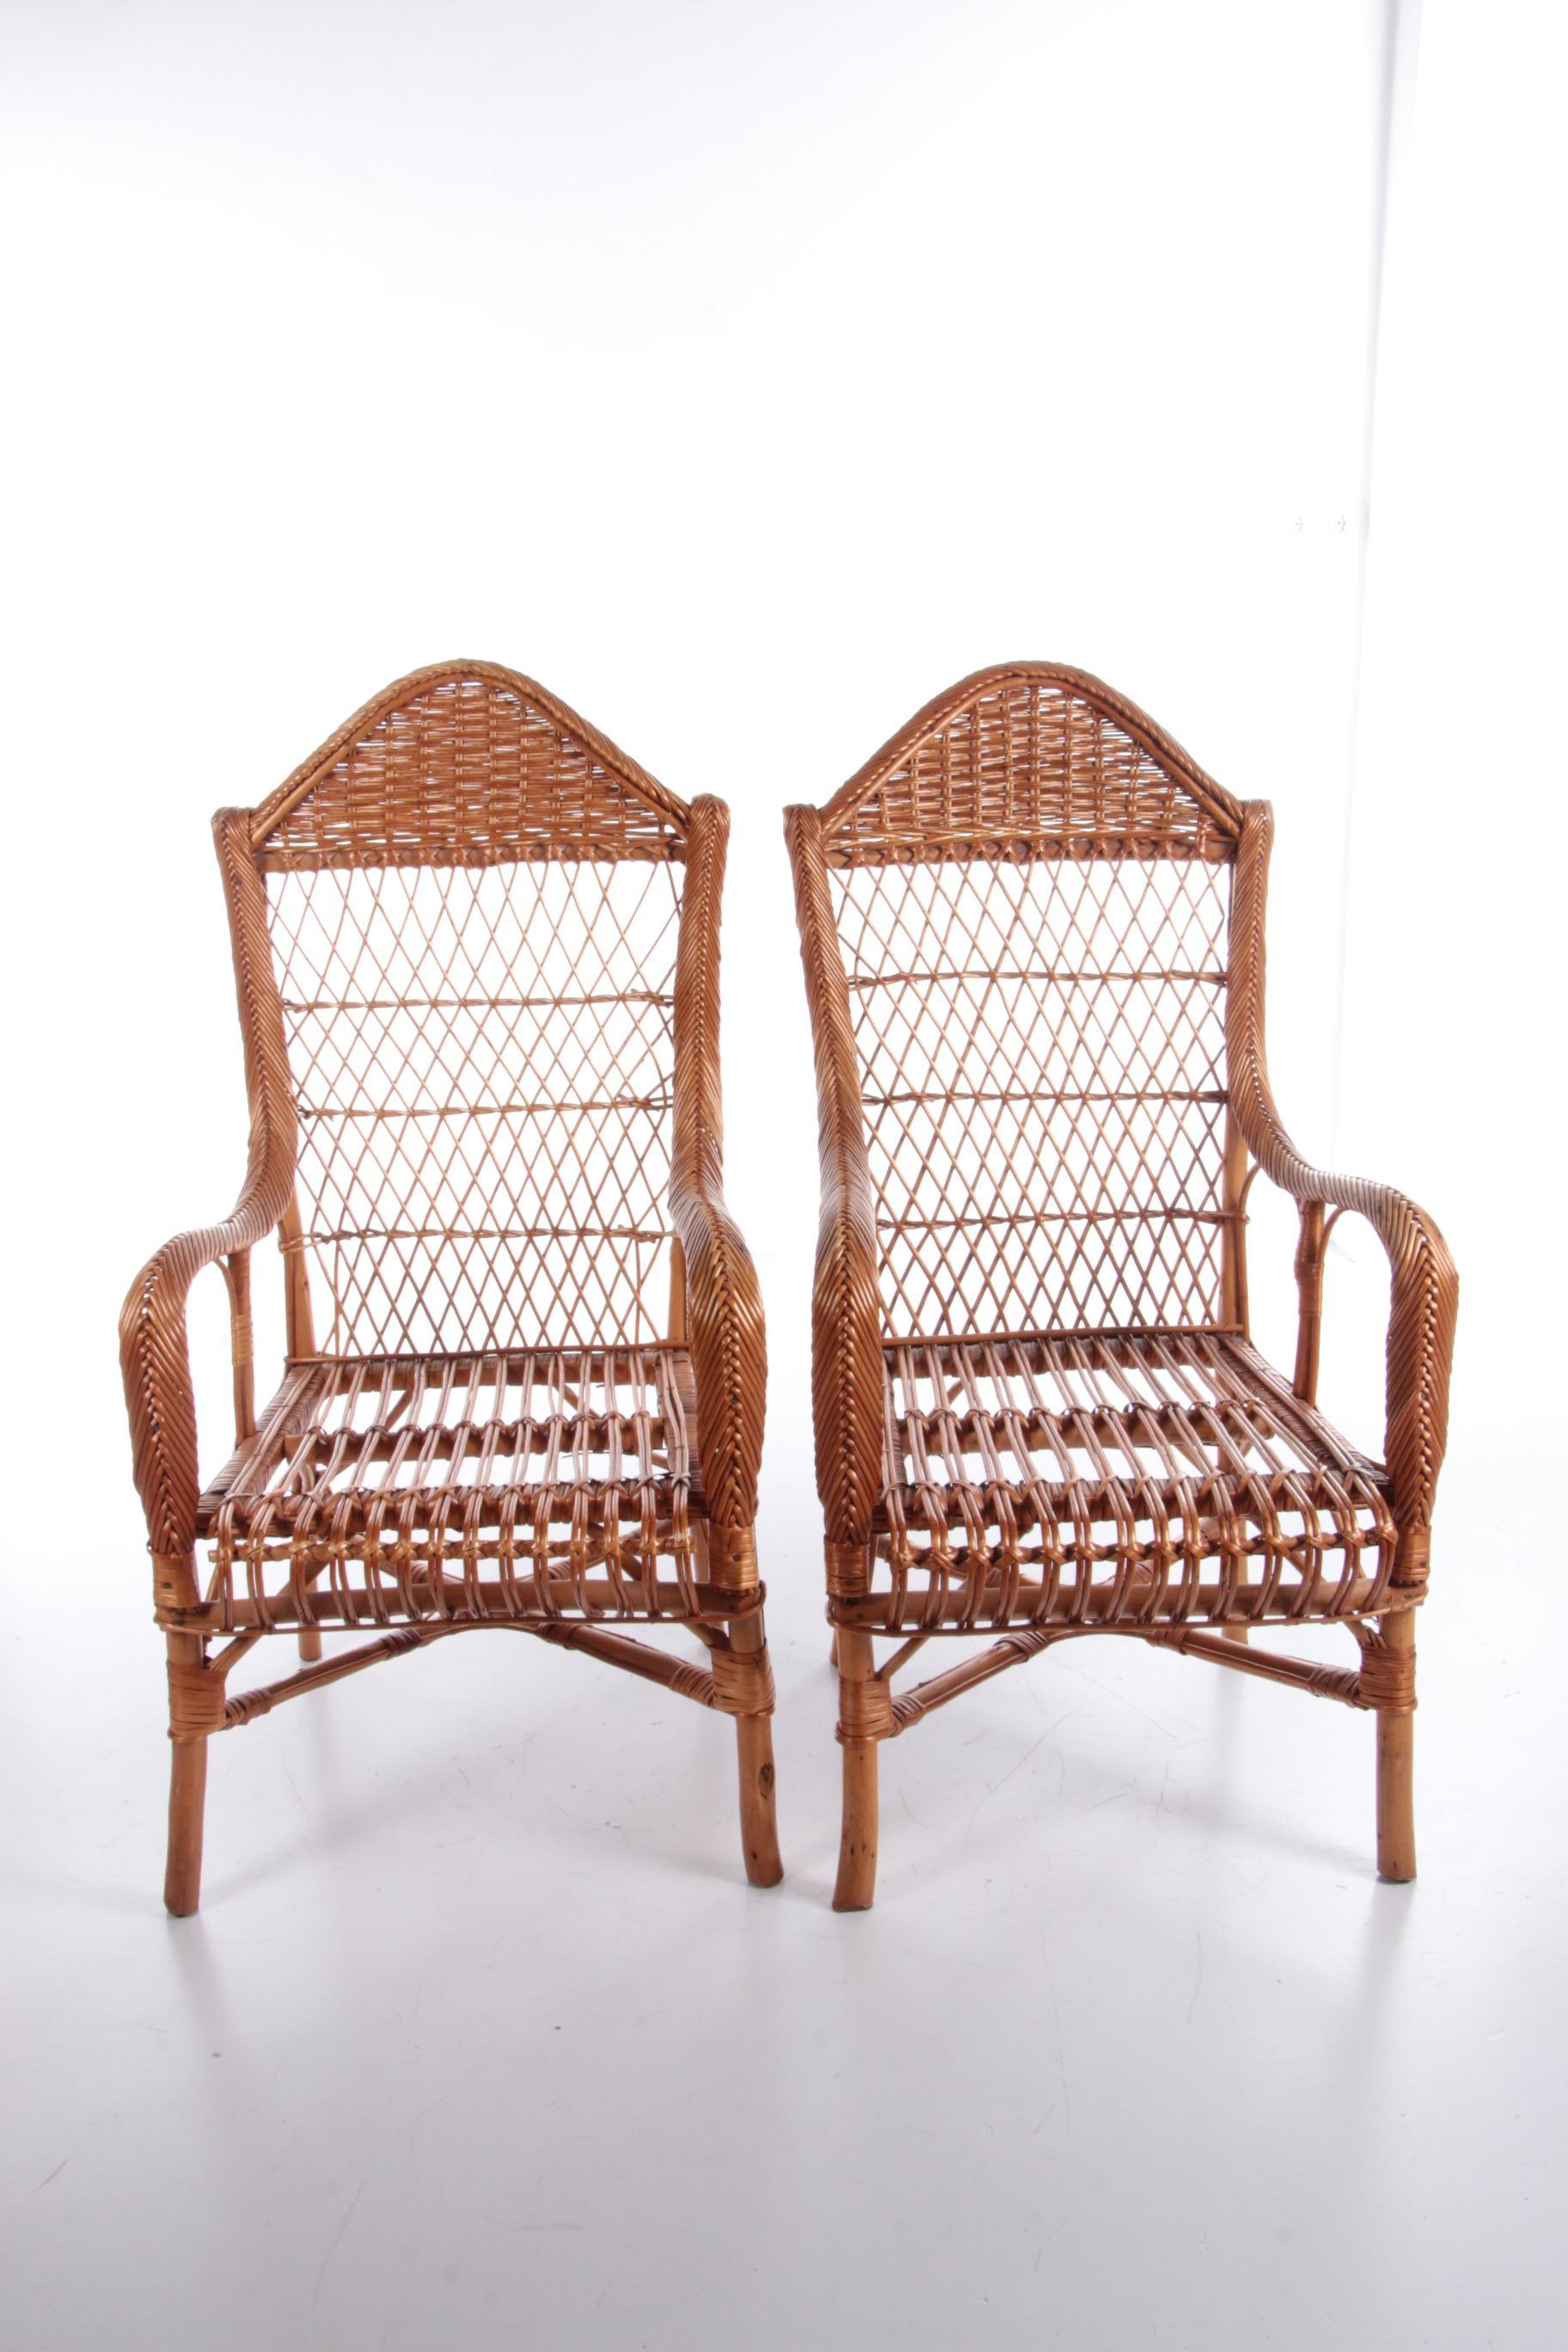 Vintage-Satz von 2 Rattan-Stühle um 1960er Jahre gemacht, die Niederlande.

Dies ist ein schönes Set von 2 Rattanstühlen, um die gemütliche Atmosphäre der Bohème zu erleben.

Alter holländischer Rattansessel mit verschiedenartig geflochtenen